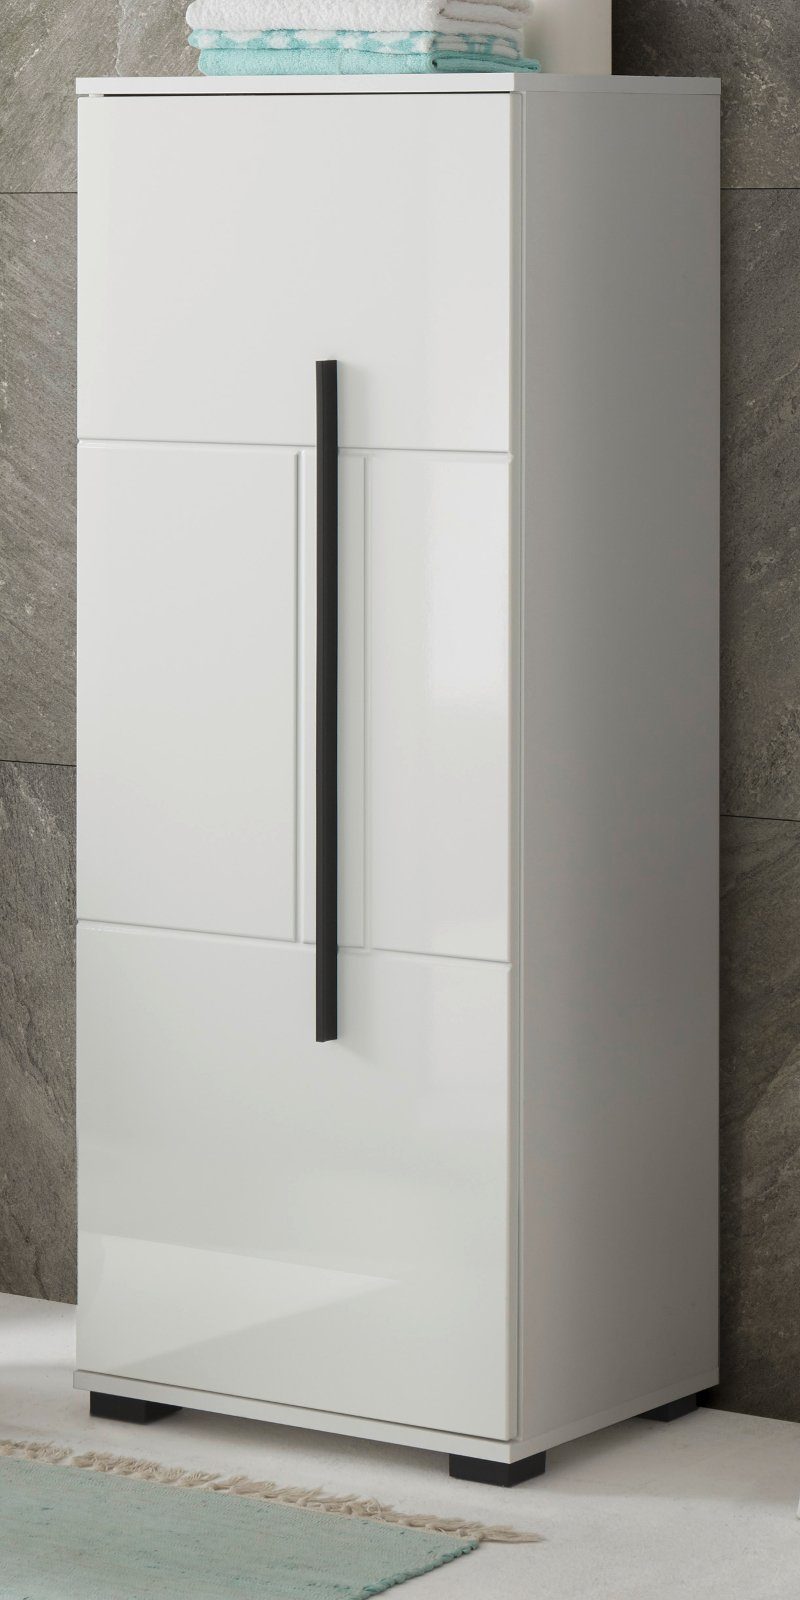 IMV Midischrank Design-D (Badschrank in weiß Hochglanz, 45 x 120 cm) mit viel Stauraum